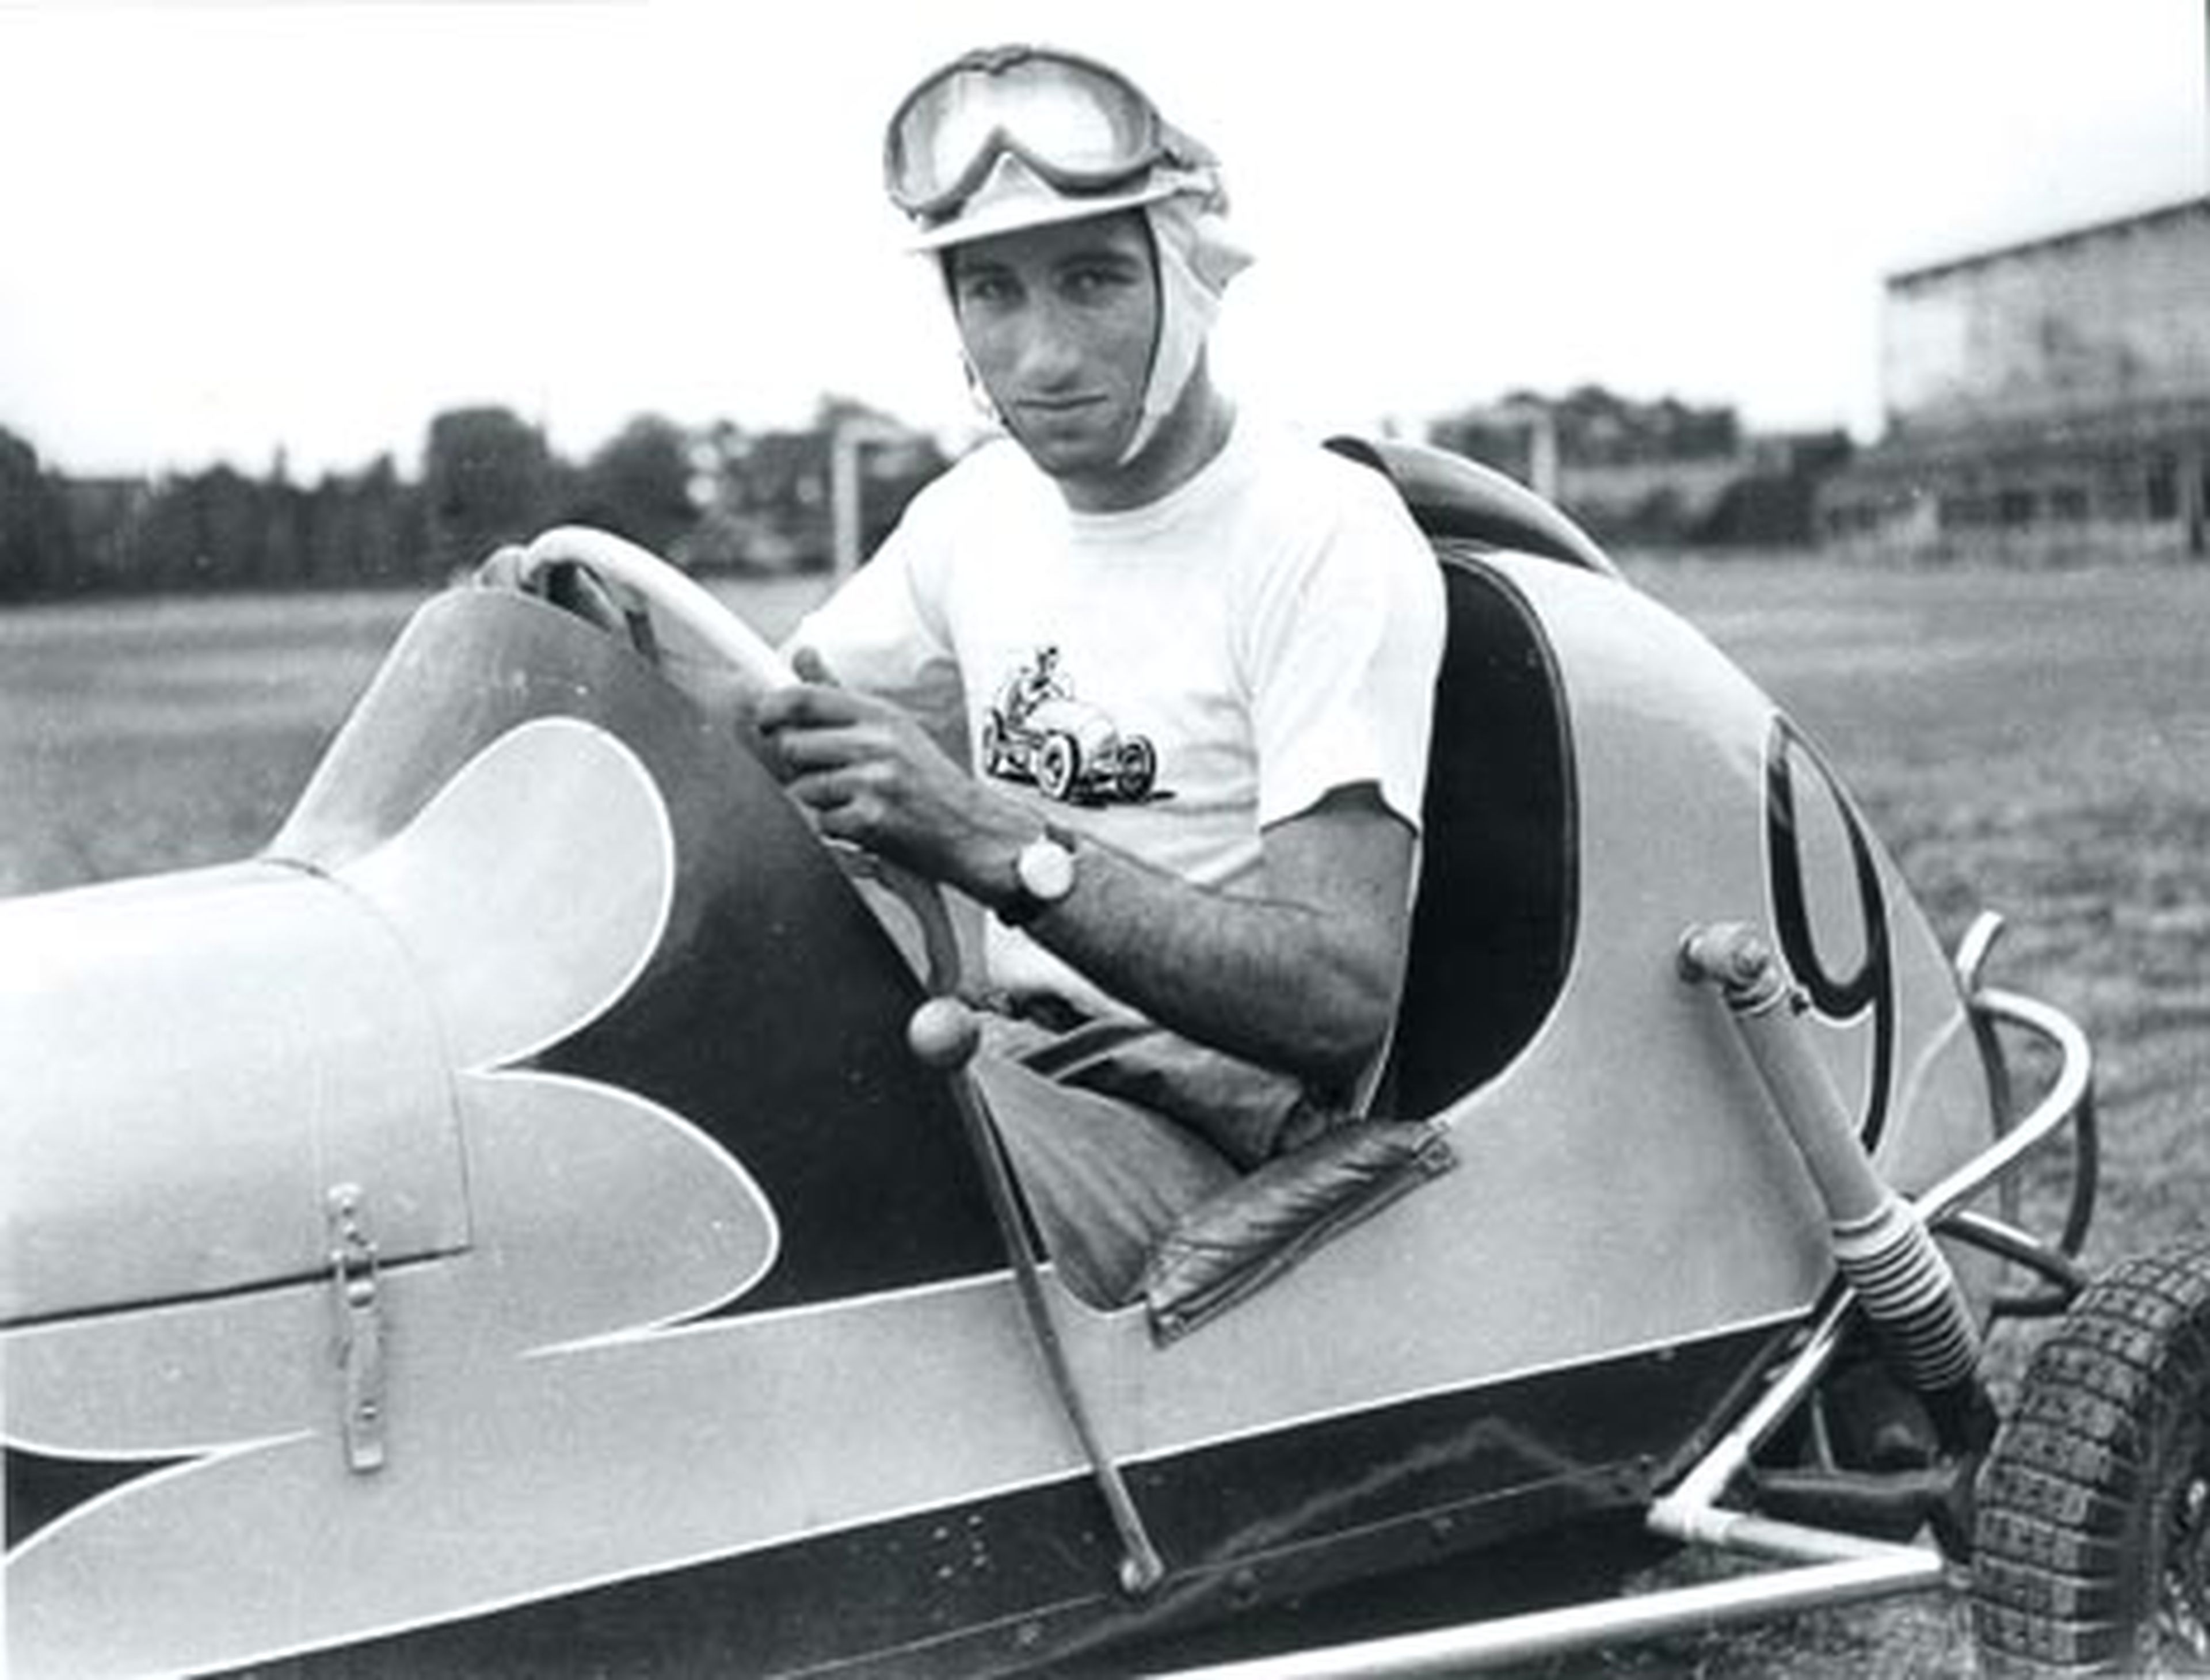 Fon empezó a competir como piloto, en 1953